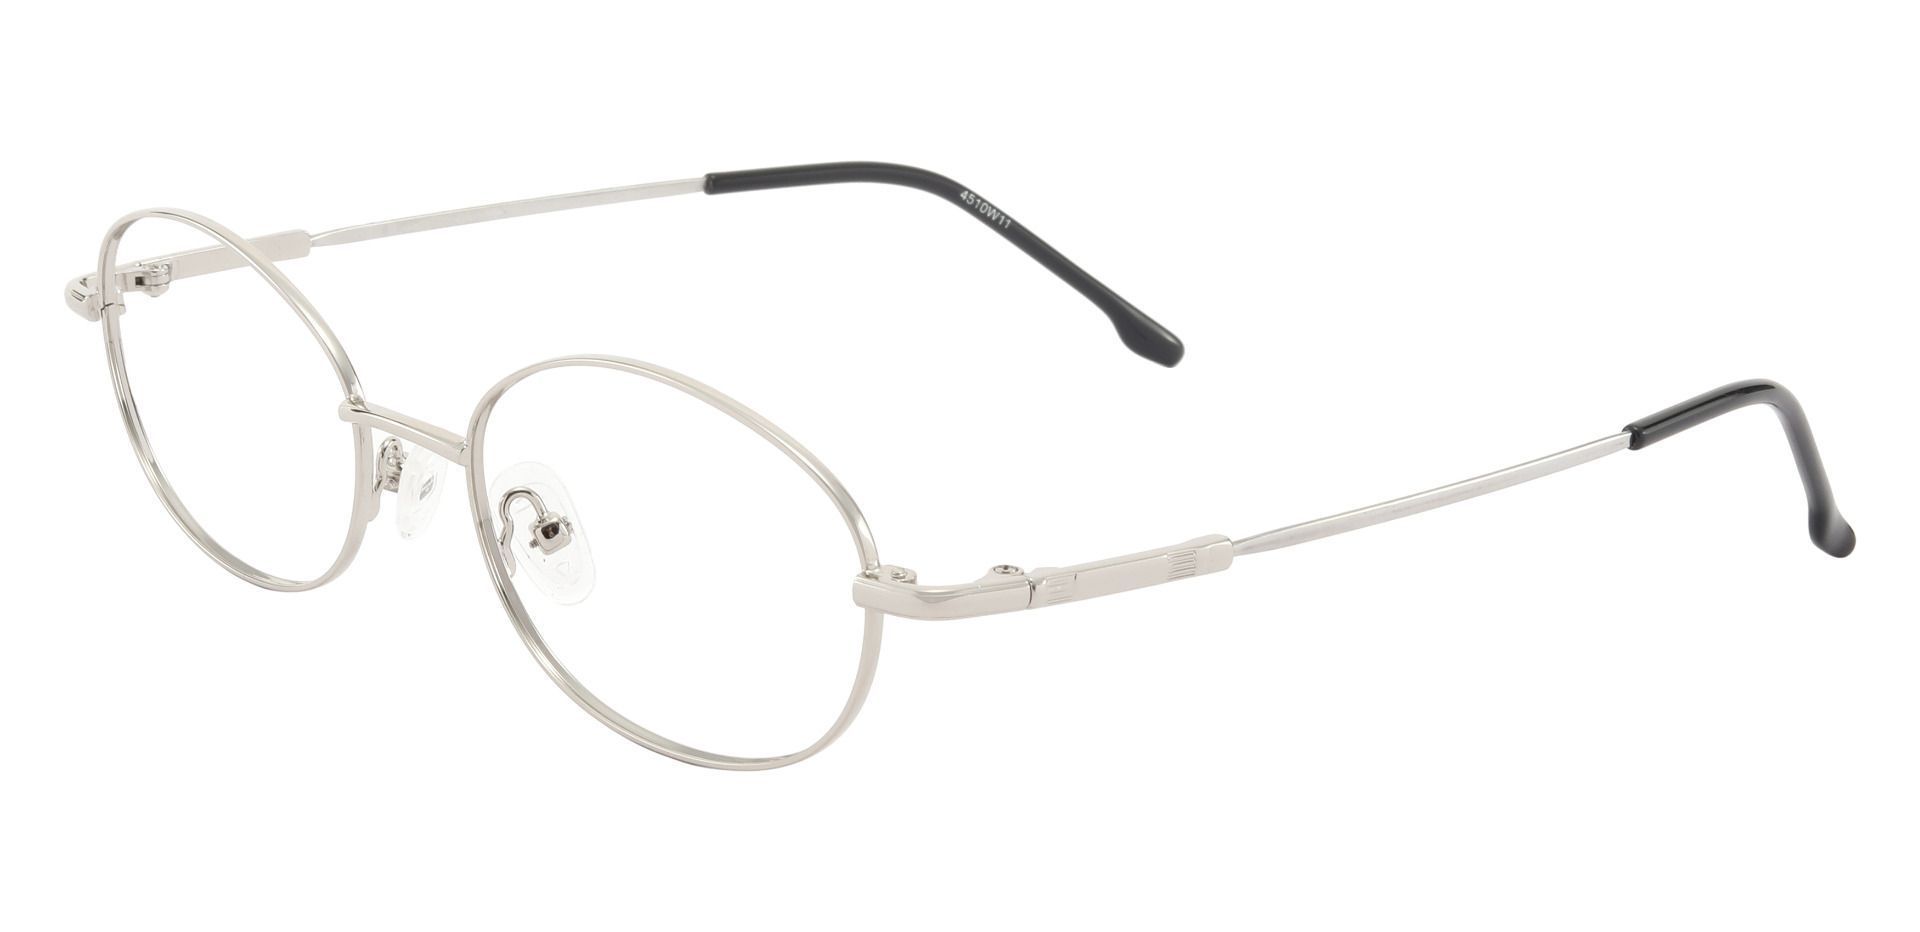 Calera Oval Reading Glasses - Silver